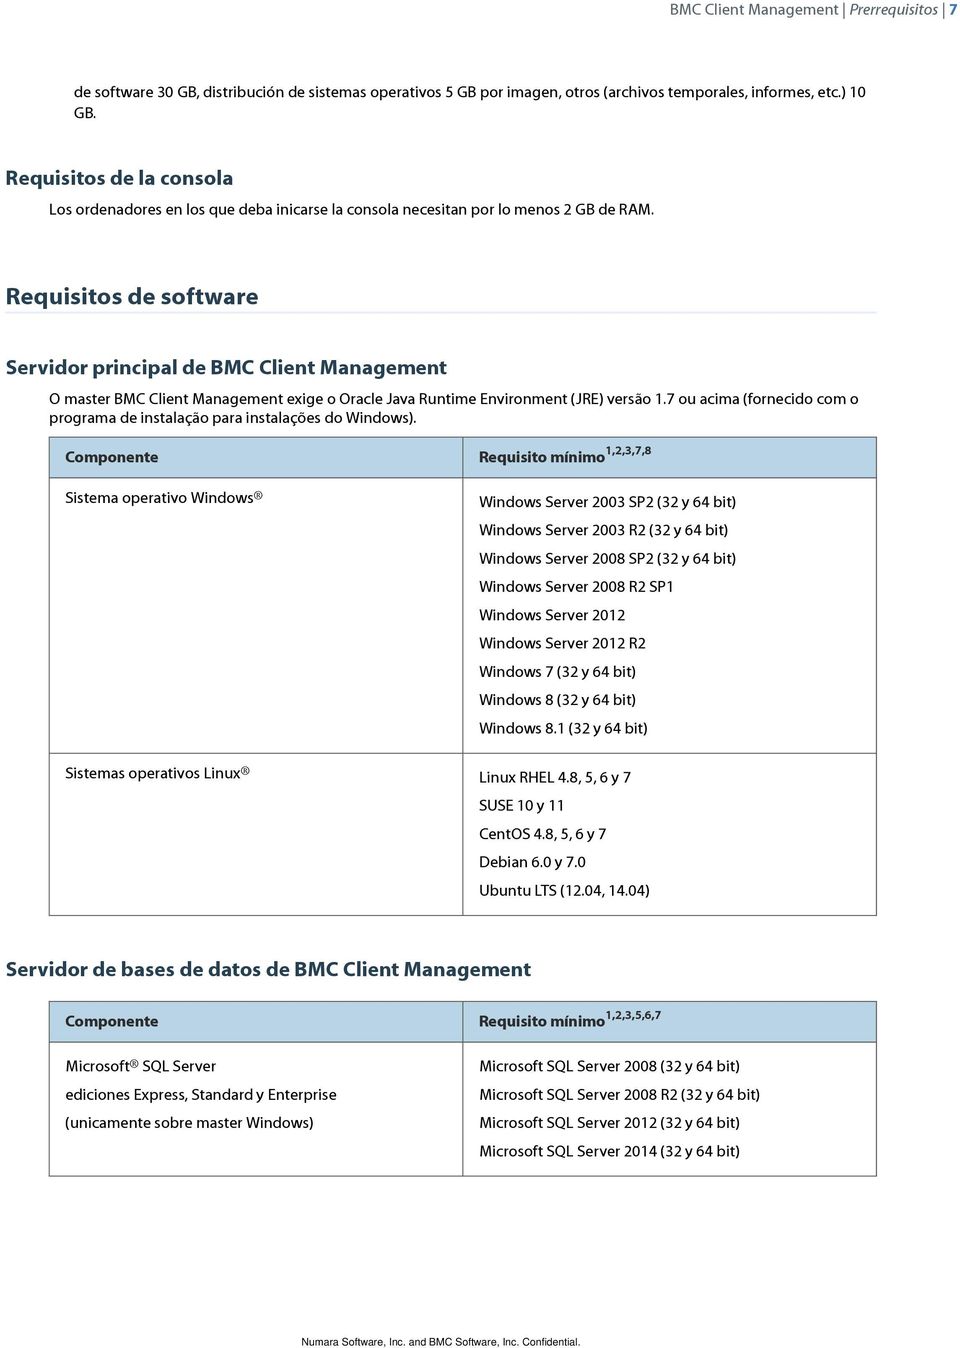 Requisitos de software Servidor principal de BMC Client Management O master BMC Client Management exige o Oracle Java Runtime Environment (JRE) versão 1.